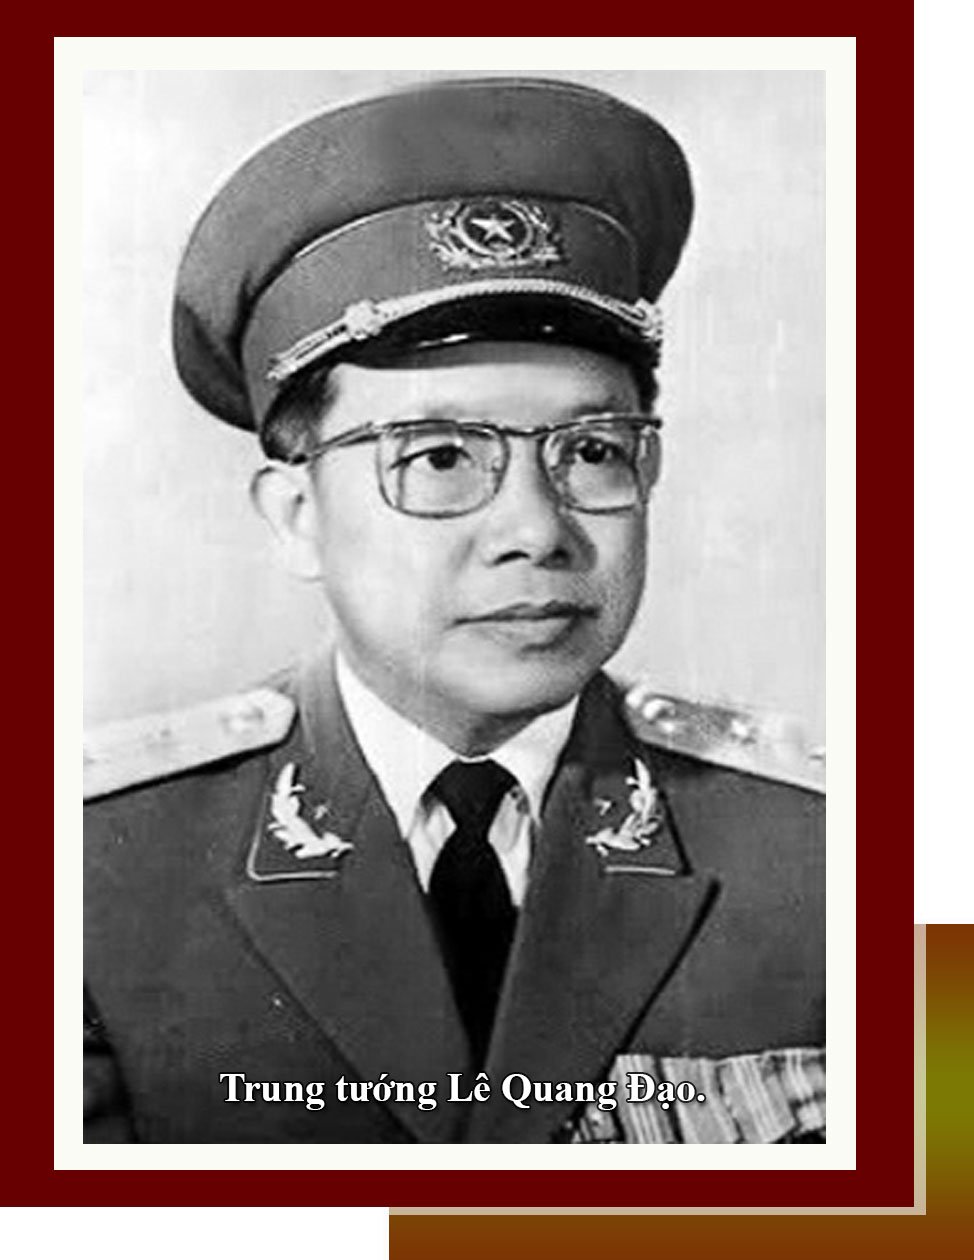 Lê Quang Đạo – Vị tướng chiến đấu và xây dựng	